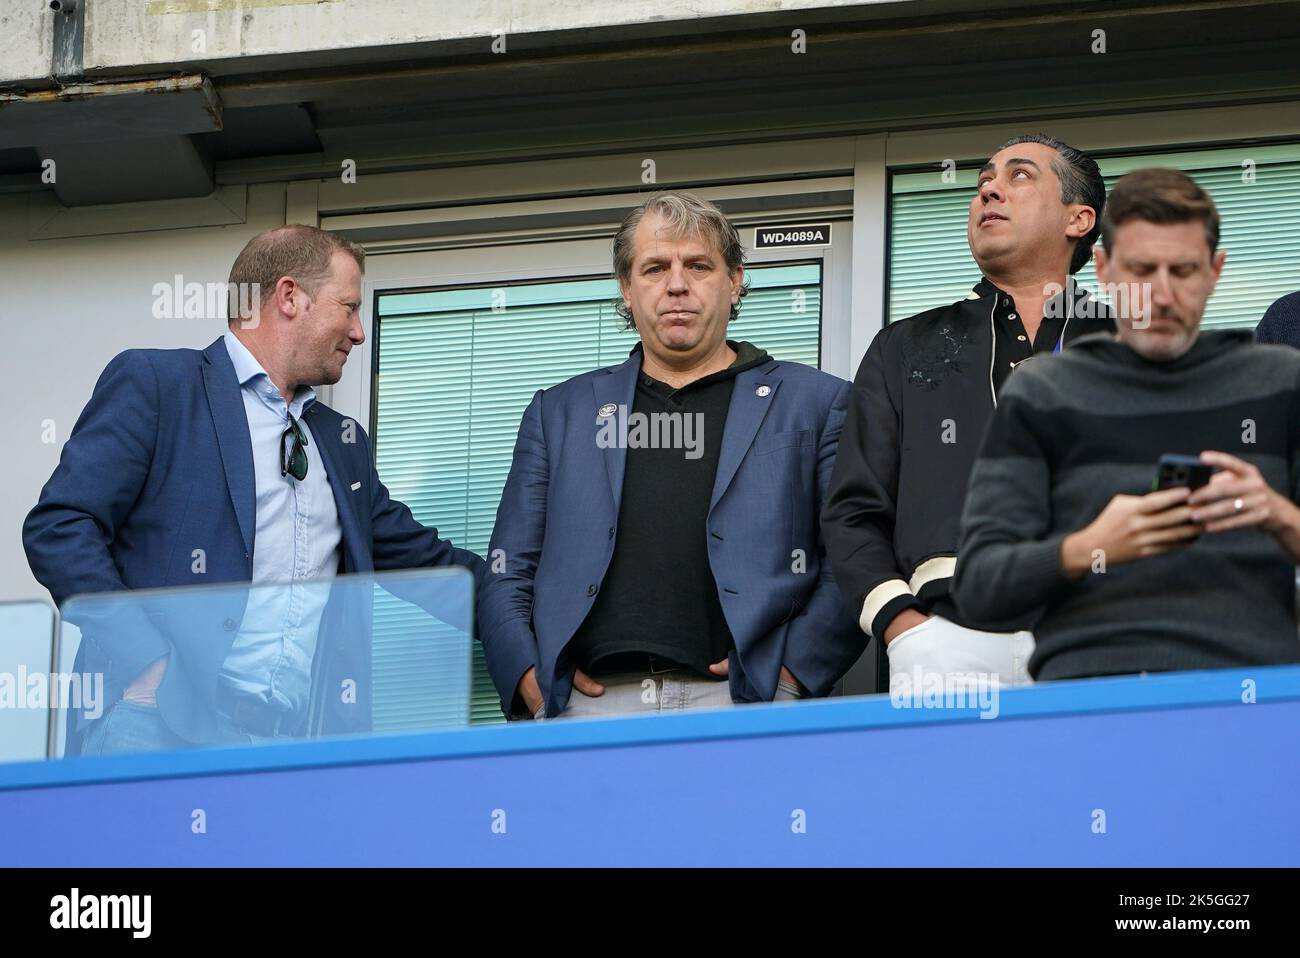 Todd Boehly, propriétaire de Chelsea (au centre) lors du match de la Premier League à Stamford Bridge, Londres. Date de la photo: Samedi 8 octobre 2022. Banque D'Images